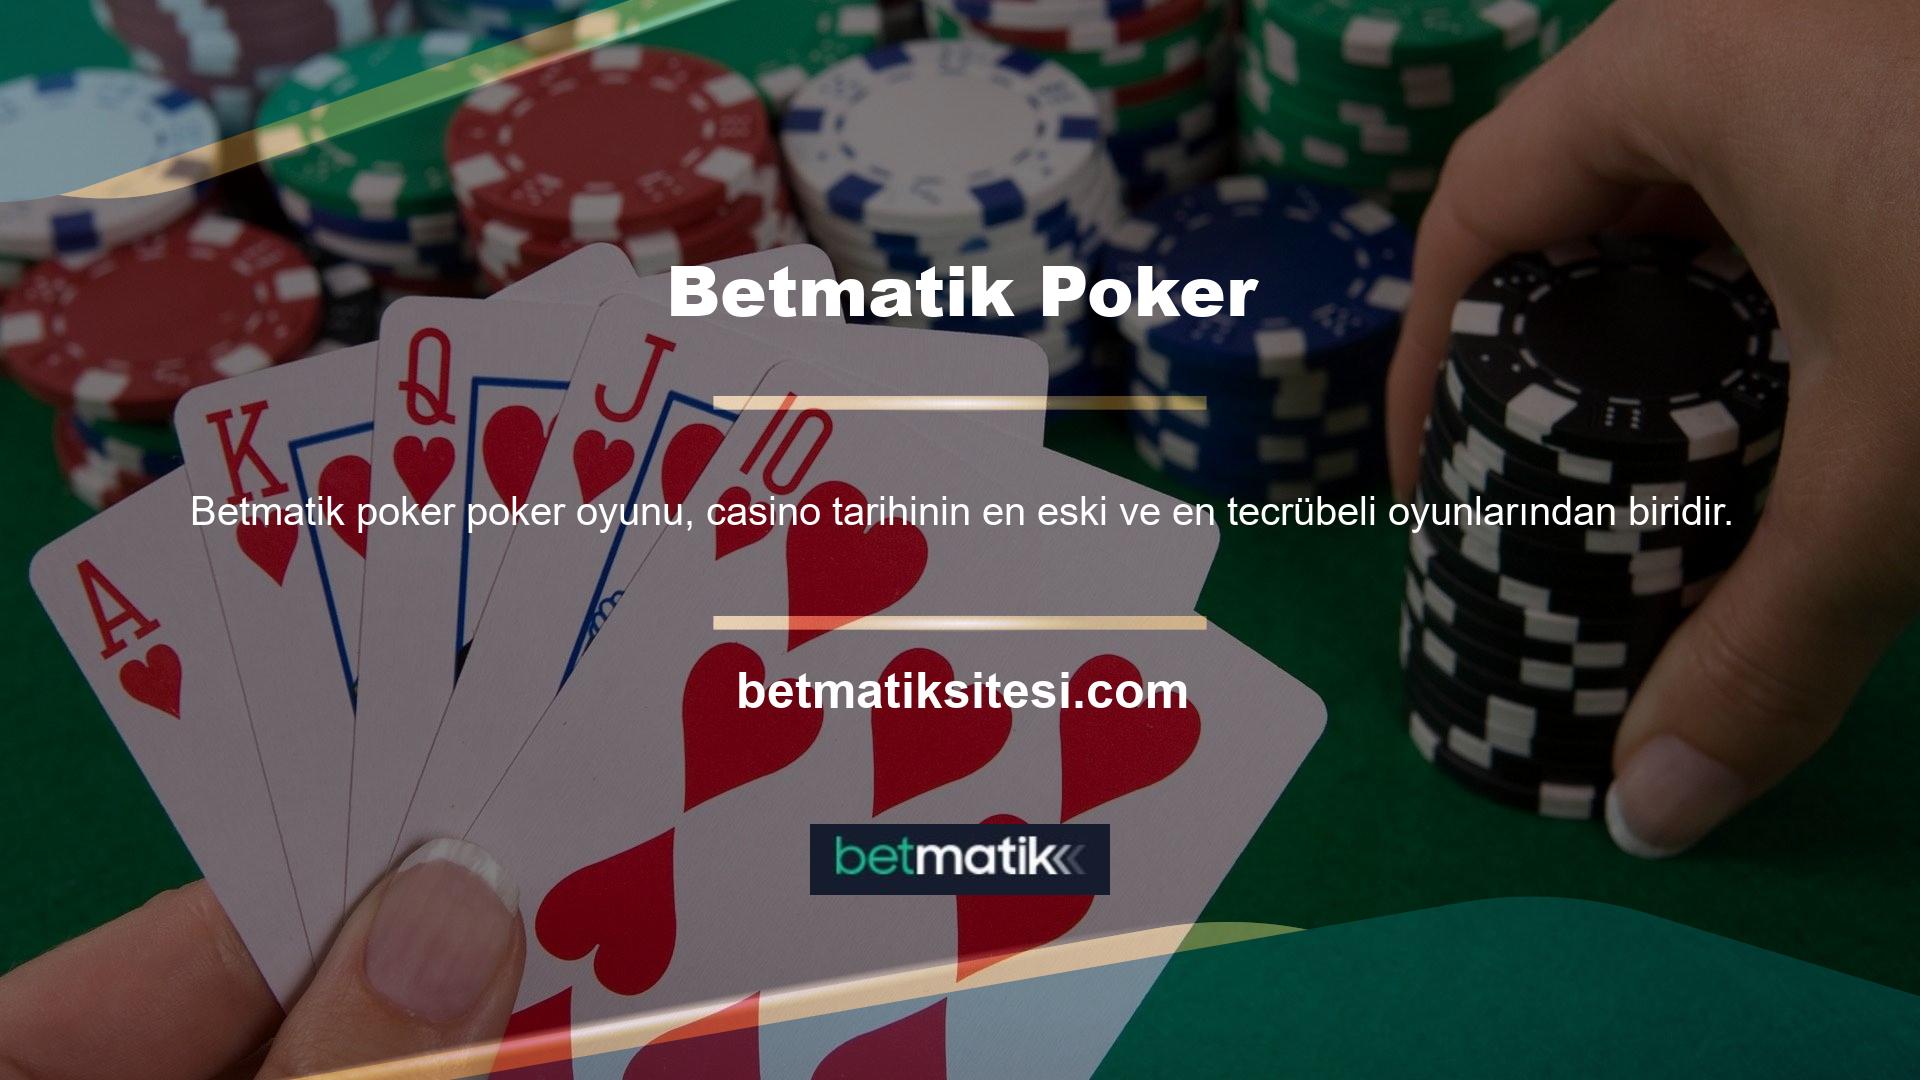 Casino dünyasının en popüler oyunlarından biri olan poker, aynı zamanda Türk dizi tarihinin de en popüler casino oyunlarından biridir